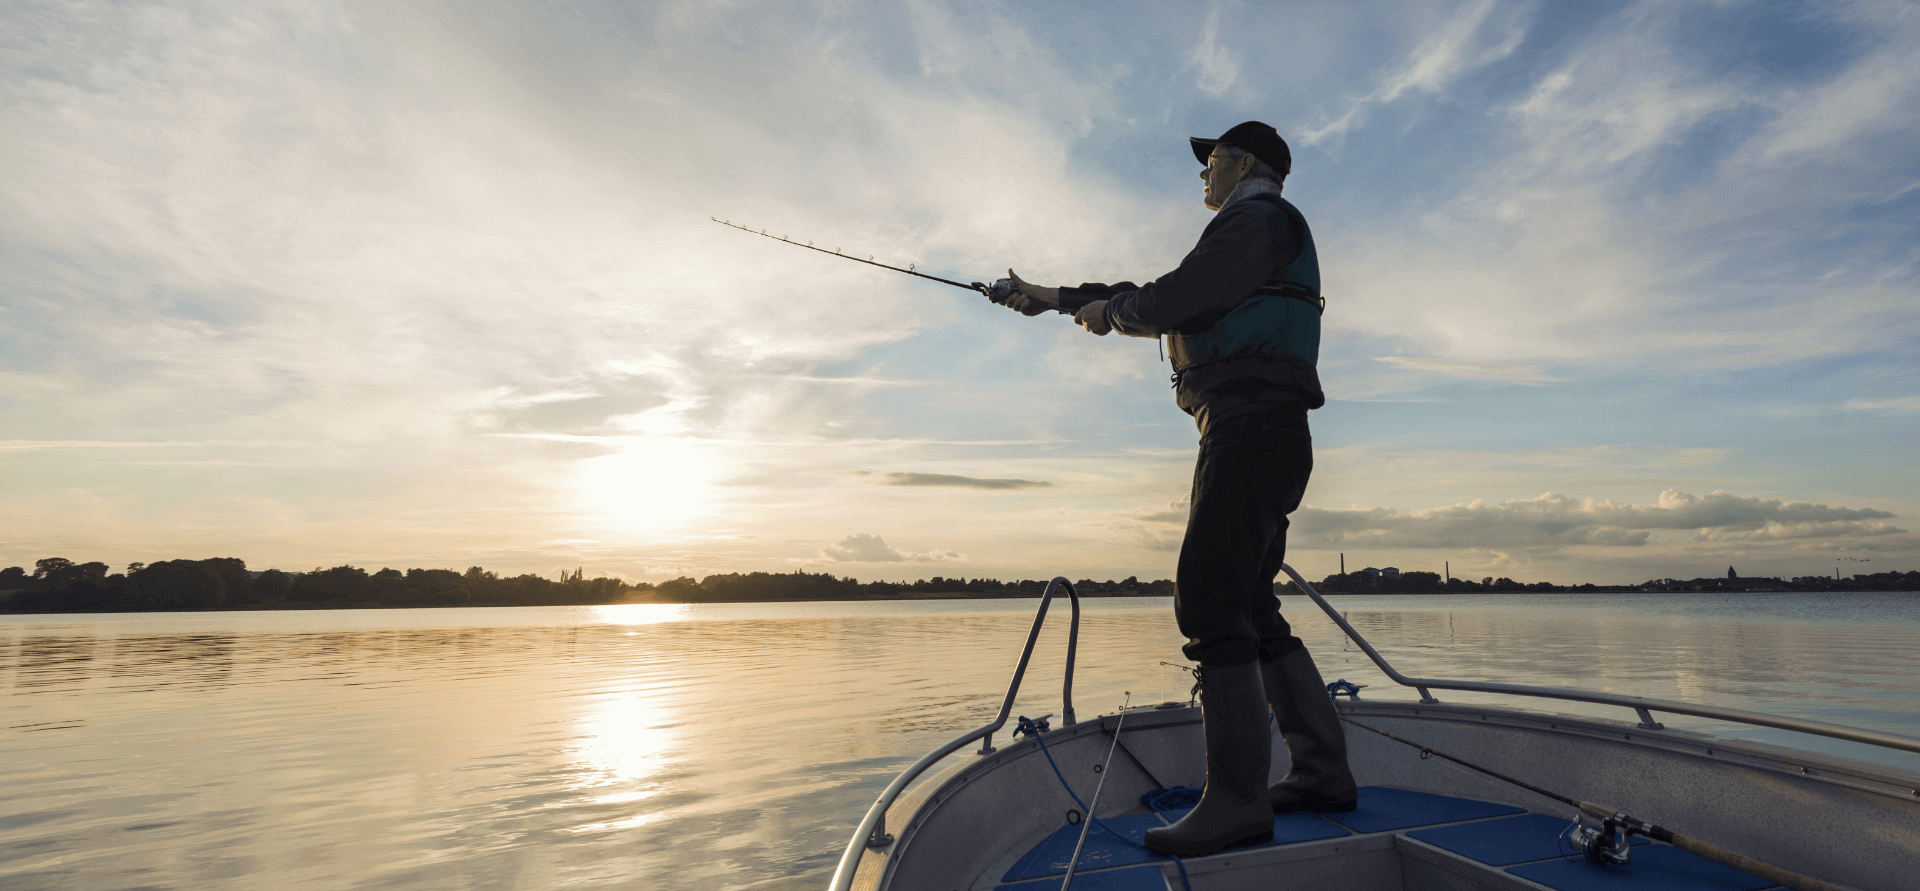 Pescador echando el sedal desde su bote en un mar llano y tranquilo.